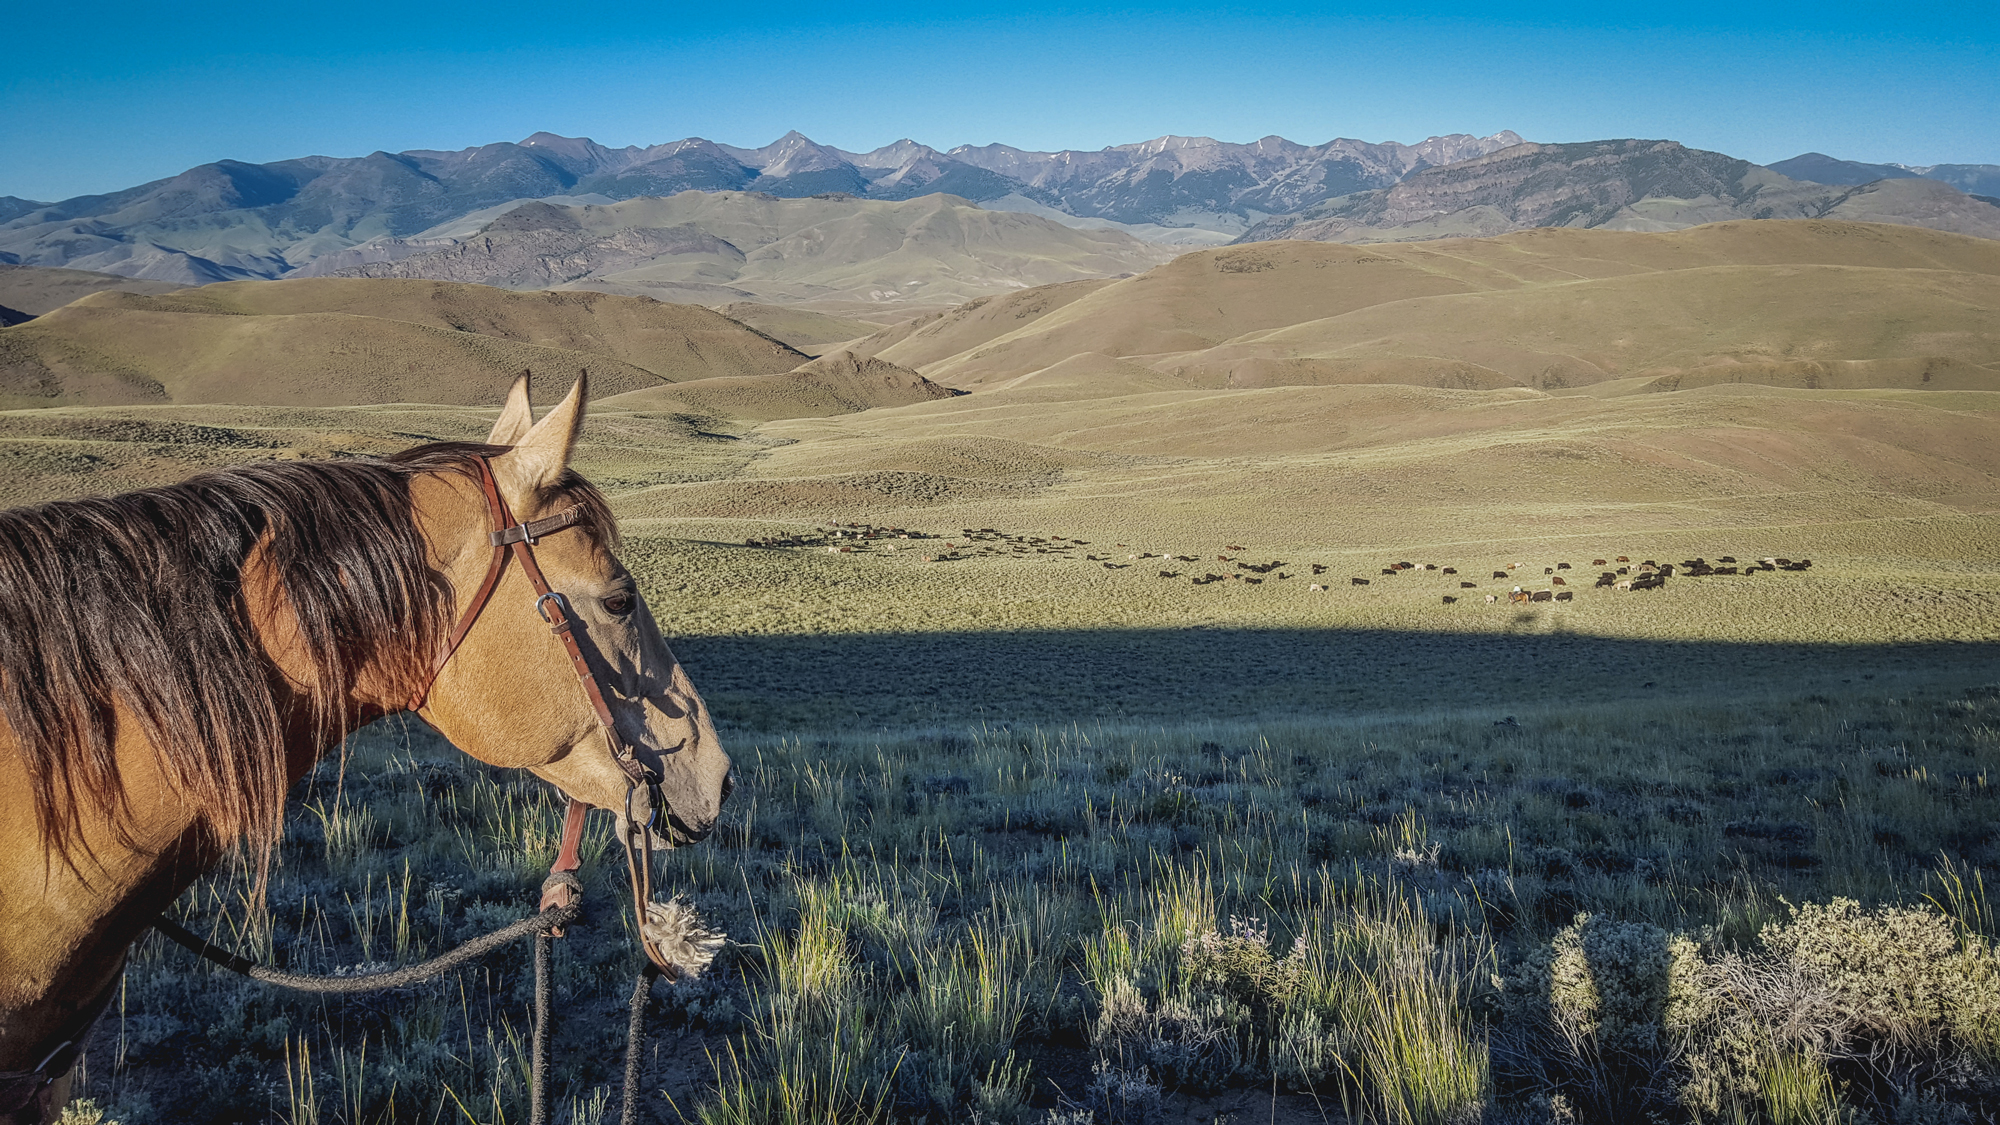 Ginger on point on the Bear Basin ridge. Lemhi Range in the background. Photo © Glenn Elzinga